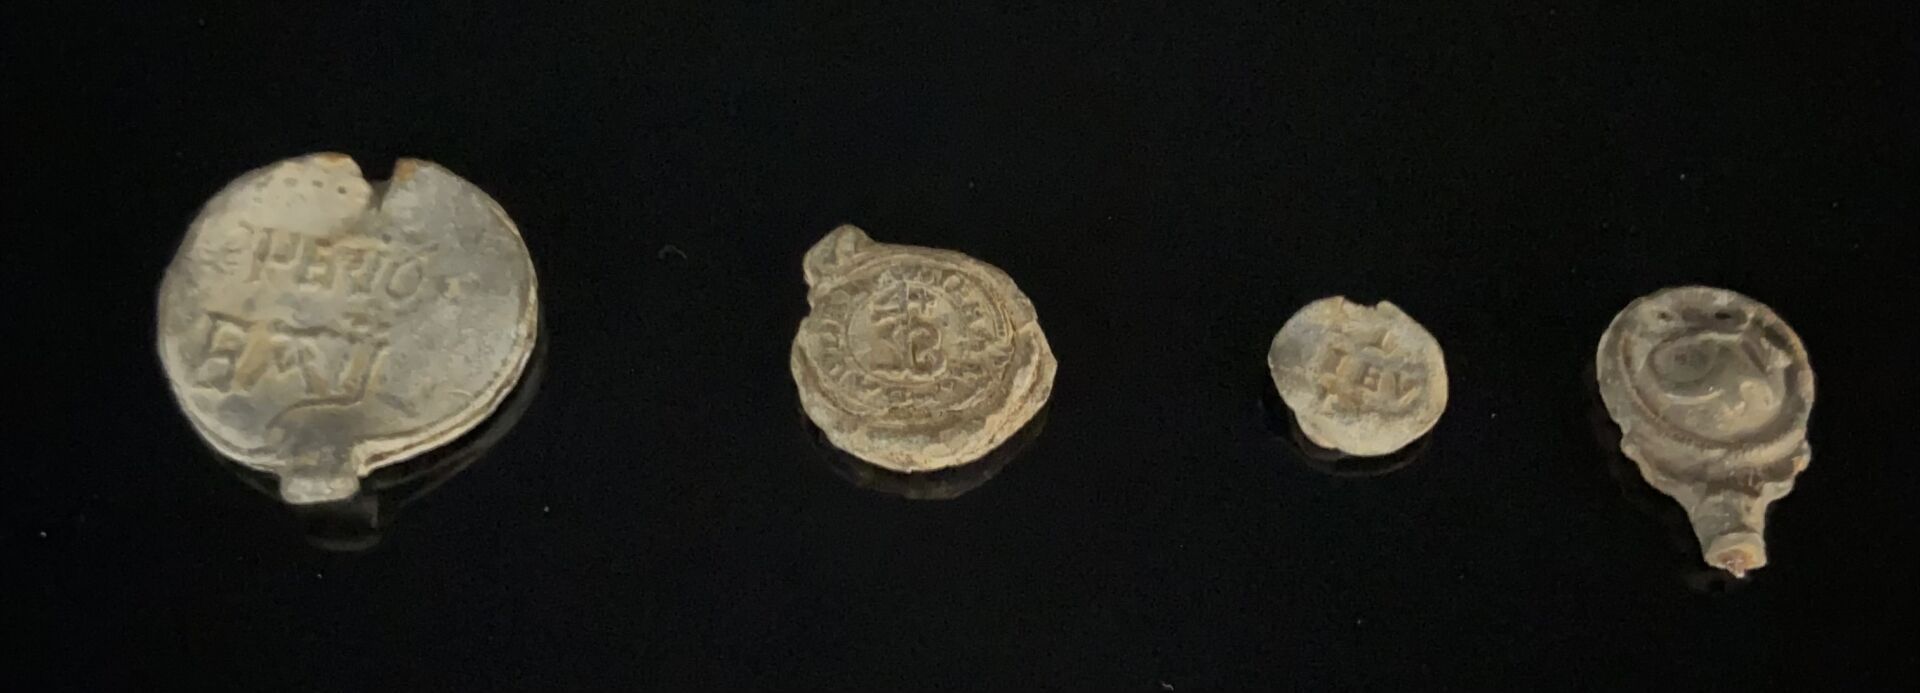 Null Conjunto de cuatro sellos de plomo medievales.

L_1,6 cm a 3,7 cm